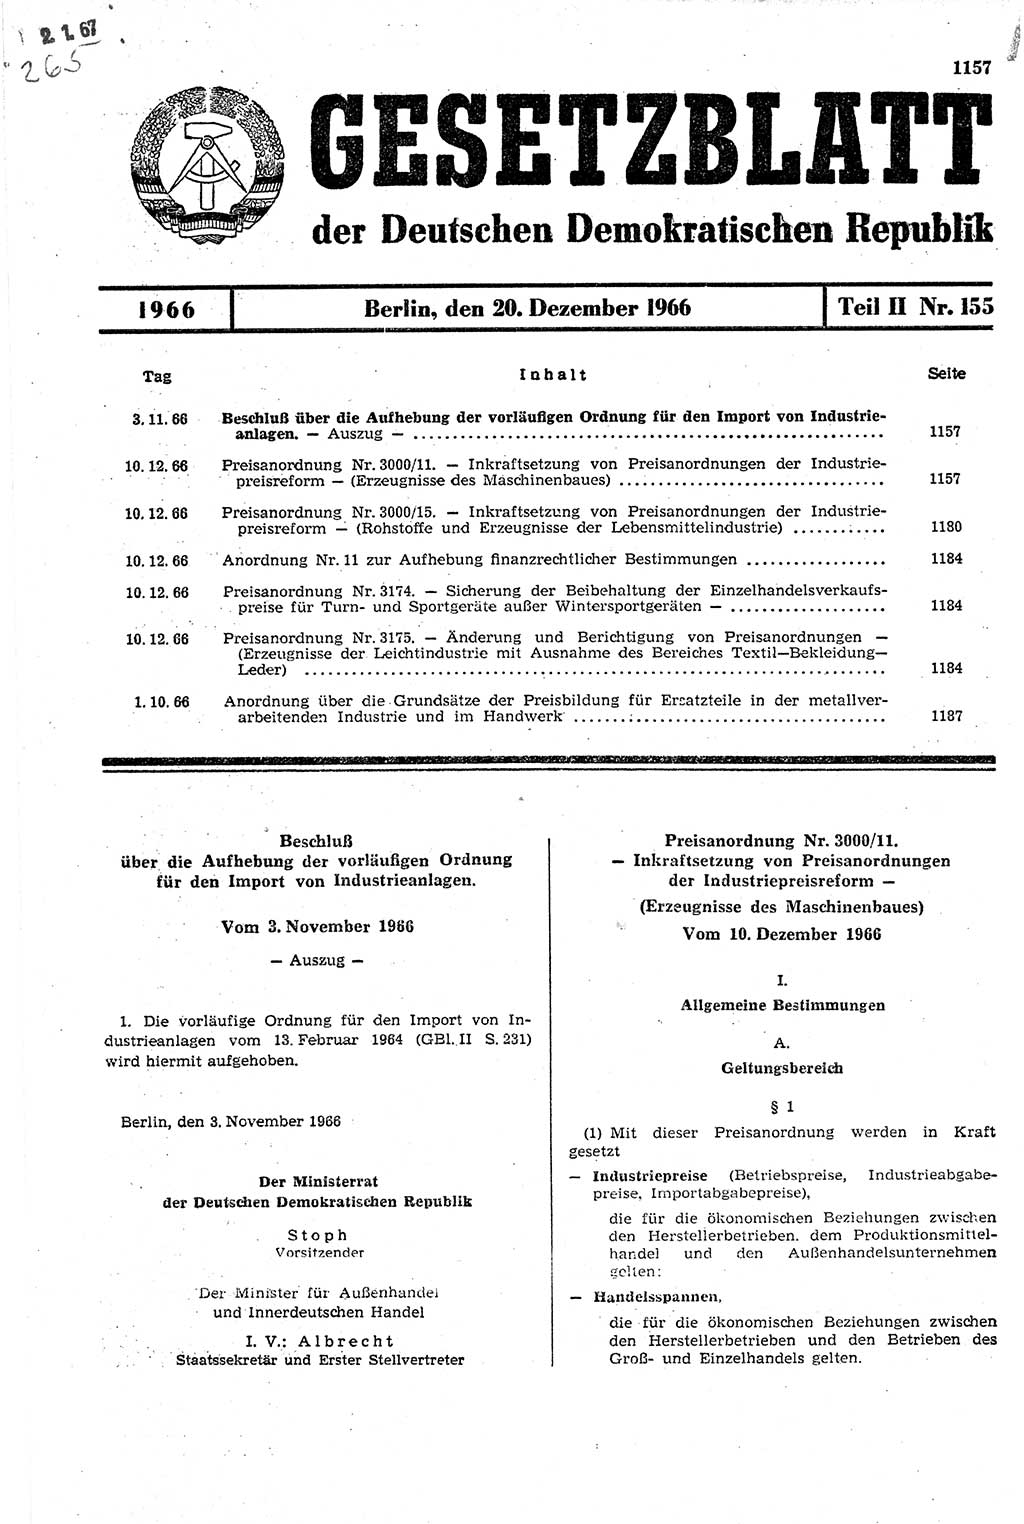 Gesetzblatt (GBl.) der Deutschen Demokratischen Republik (DDR) Teil ⅠⅠ 1966, Seite 1157 (GBl. DDR ⅠⅠ 1966, S. 1157)